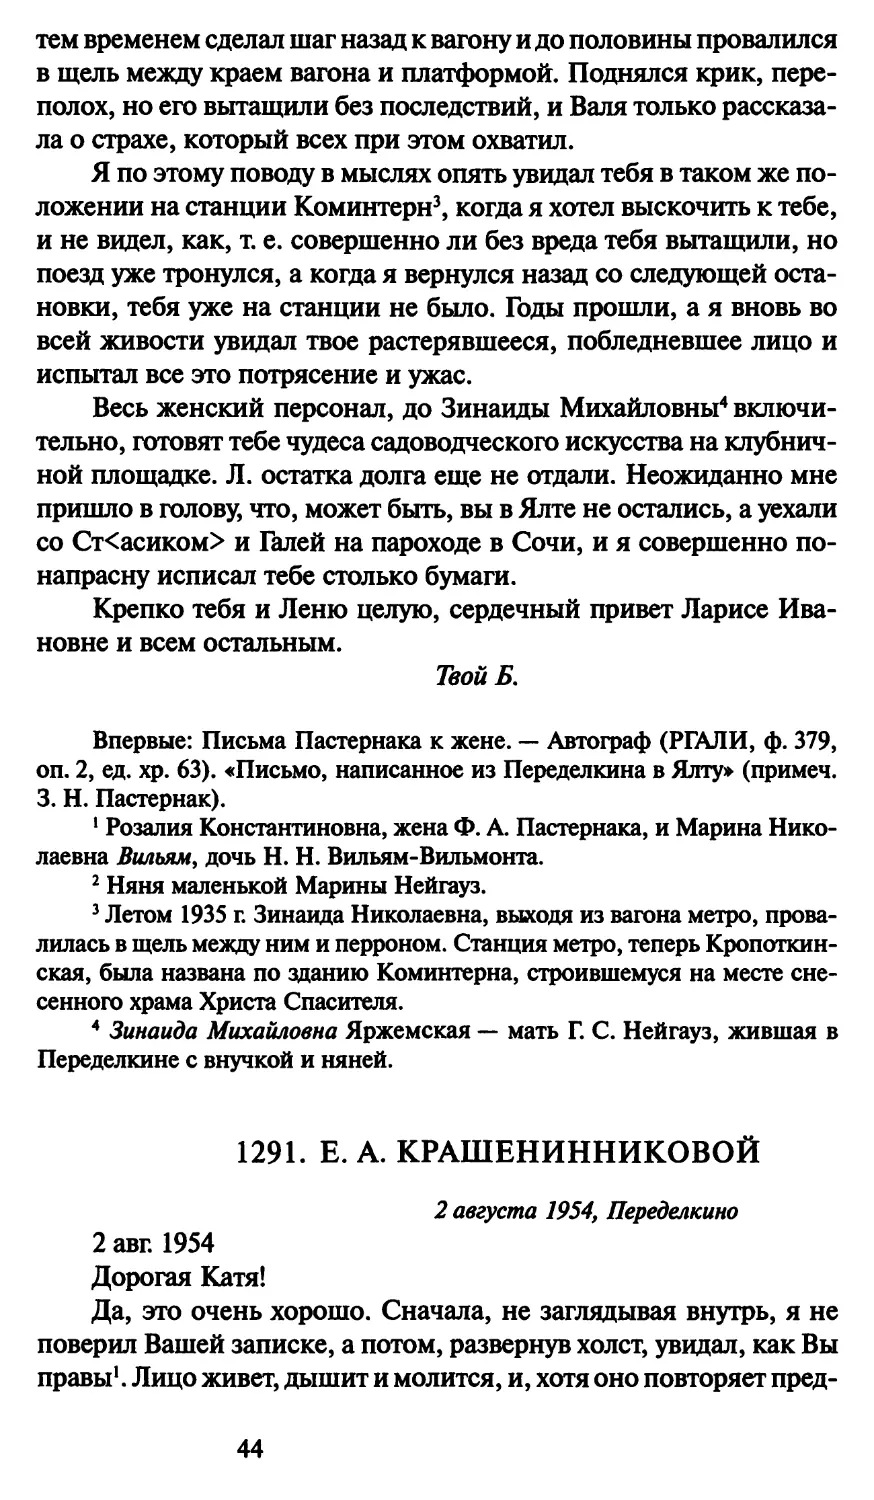 1291. Е. А. Крашенинниковой 2 августа 1954